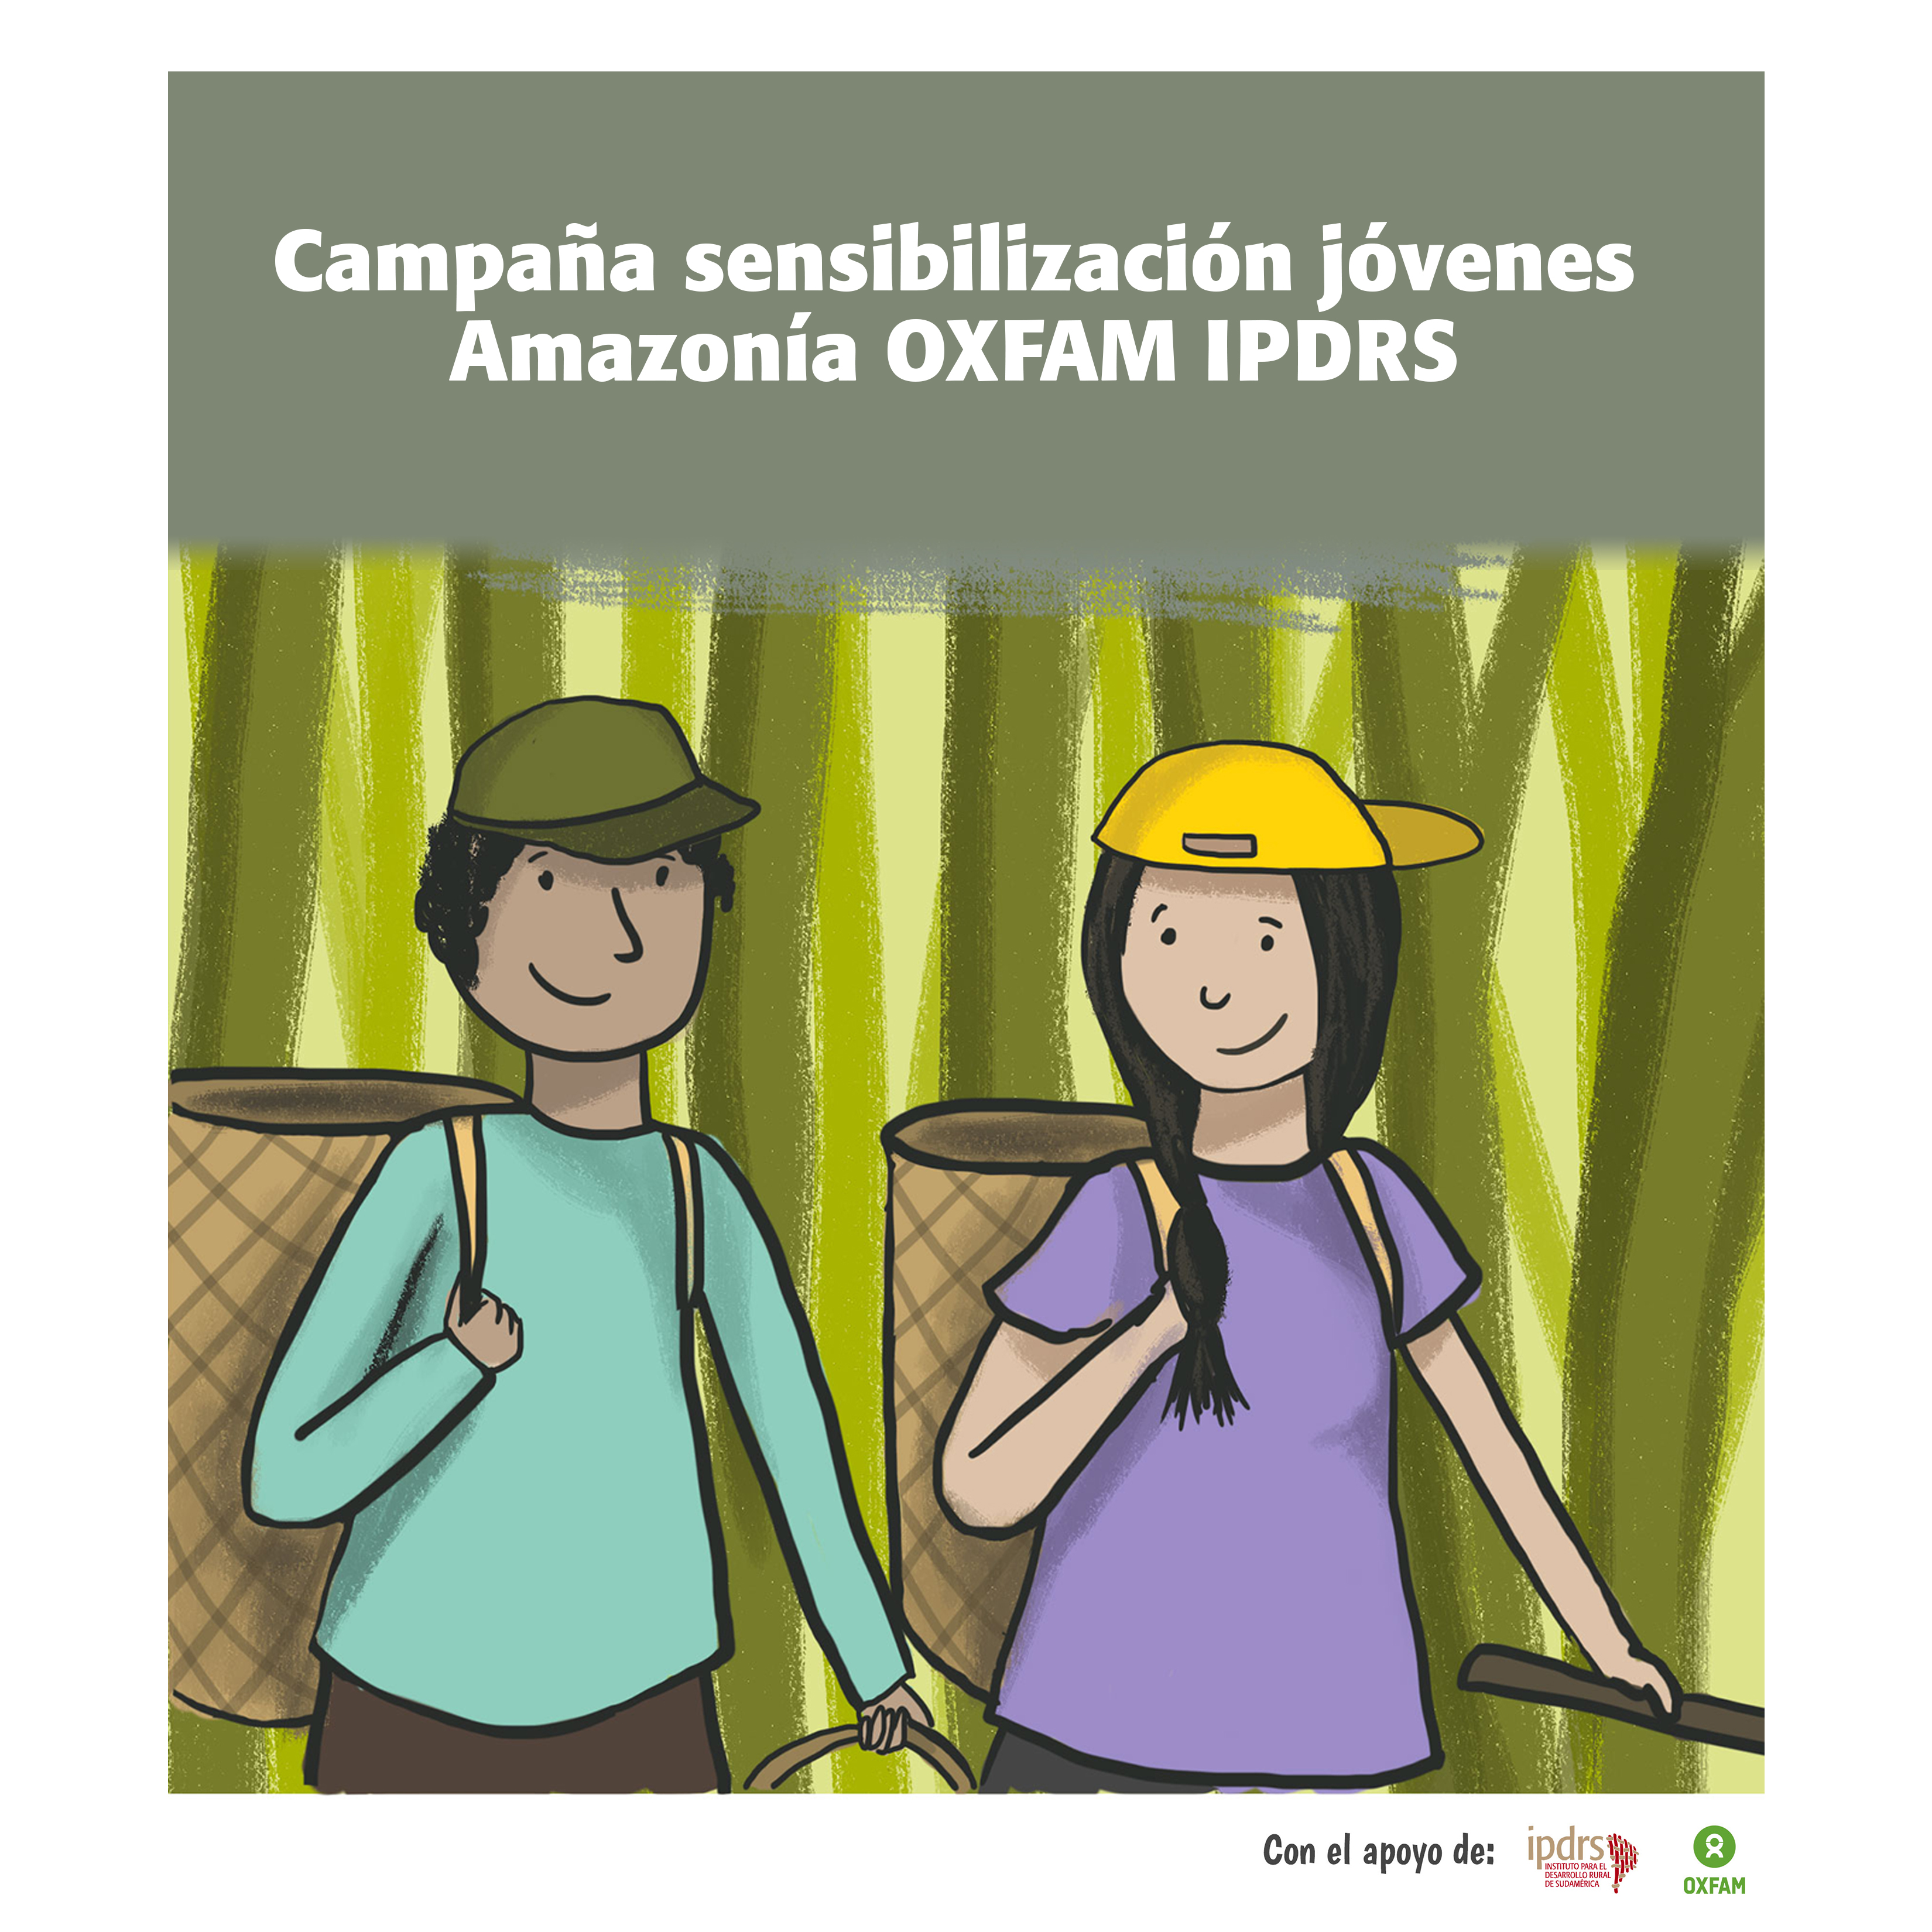 Campaña sensibilización jóvenes Amazonía OXFAM IPDRS